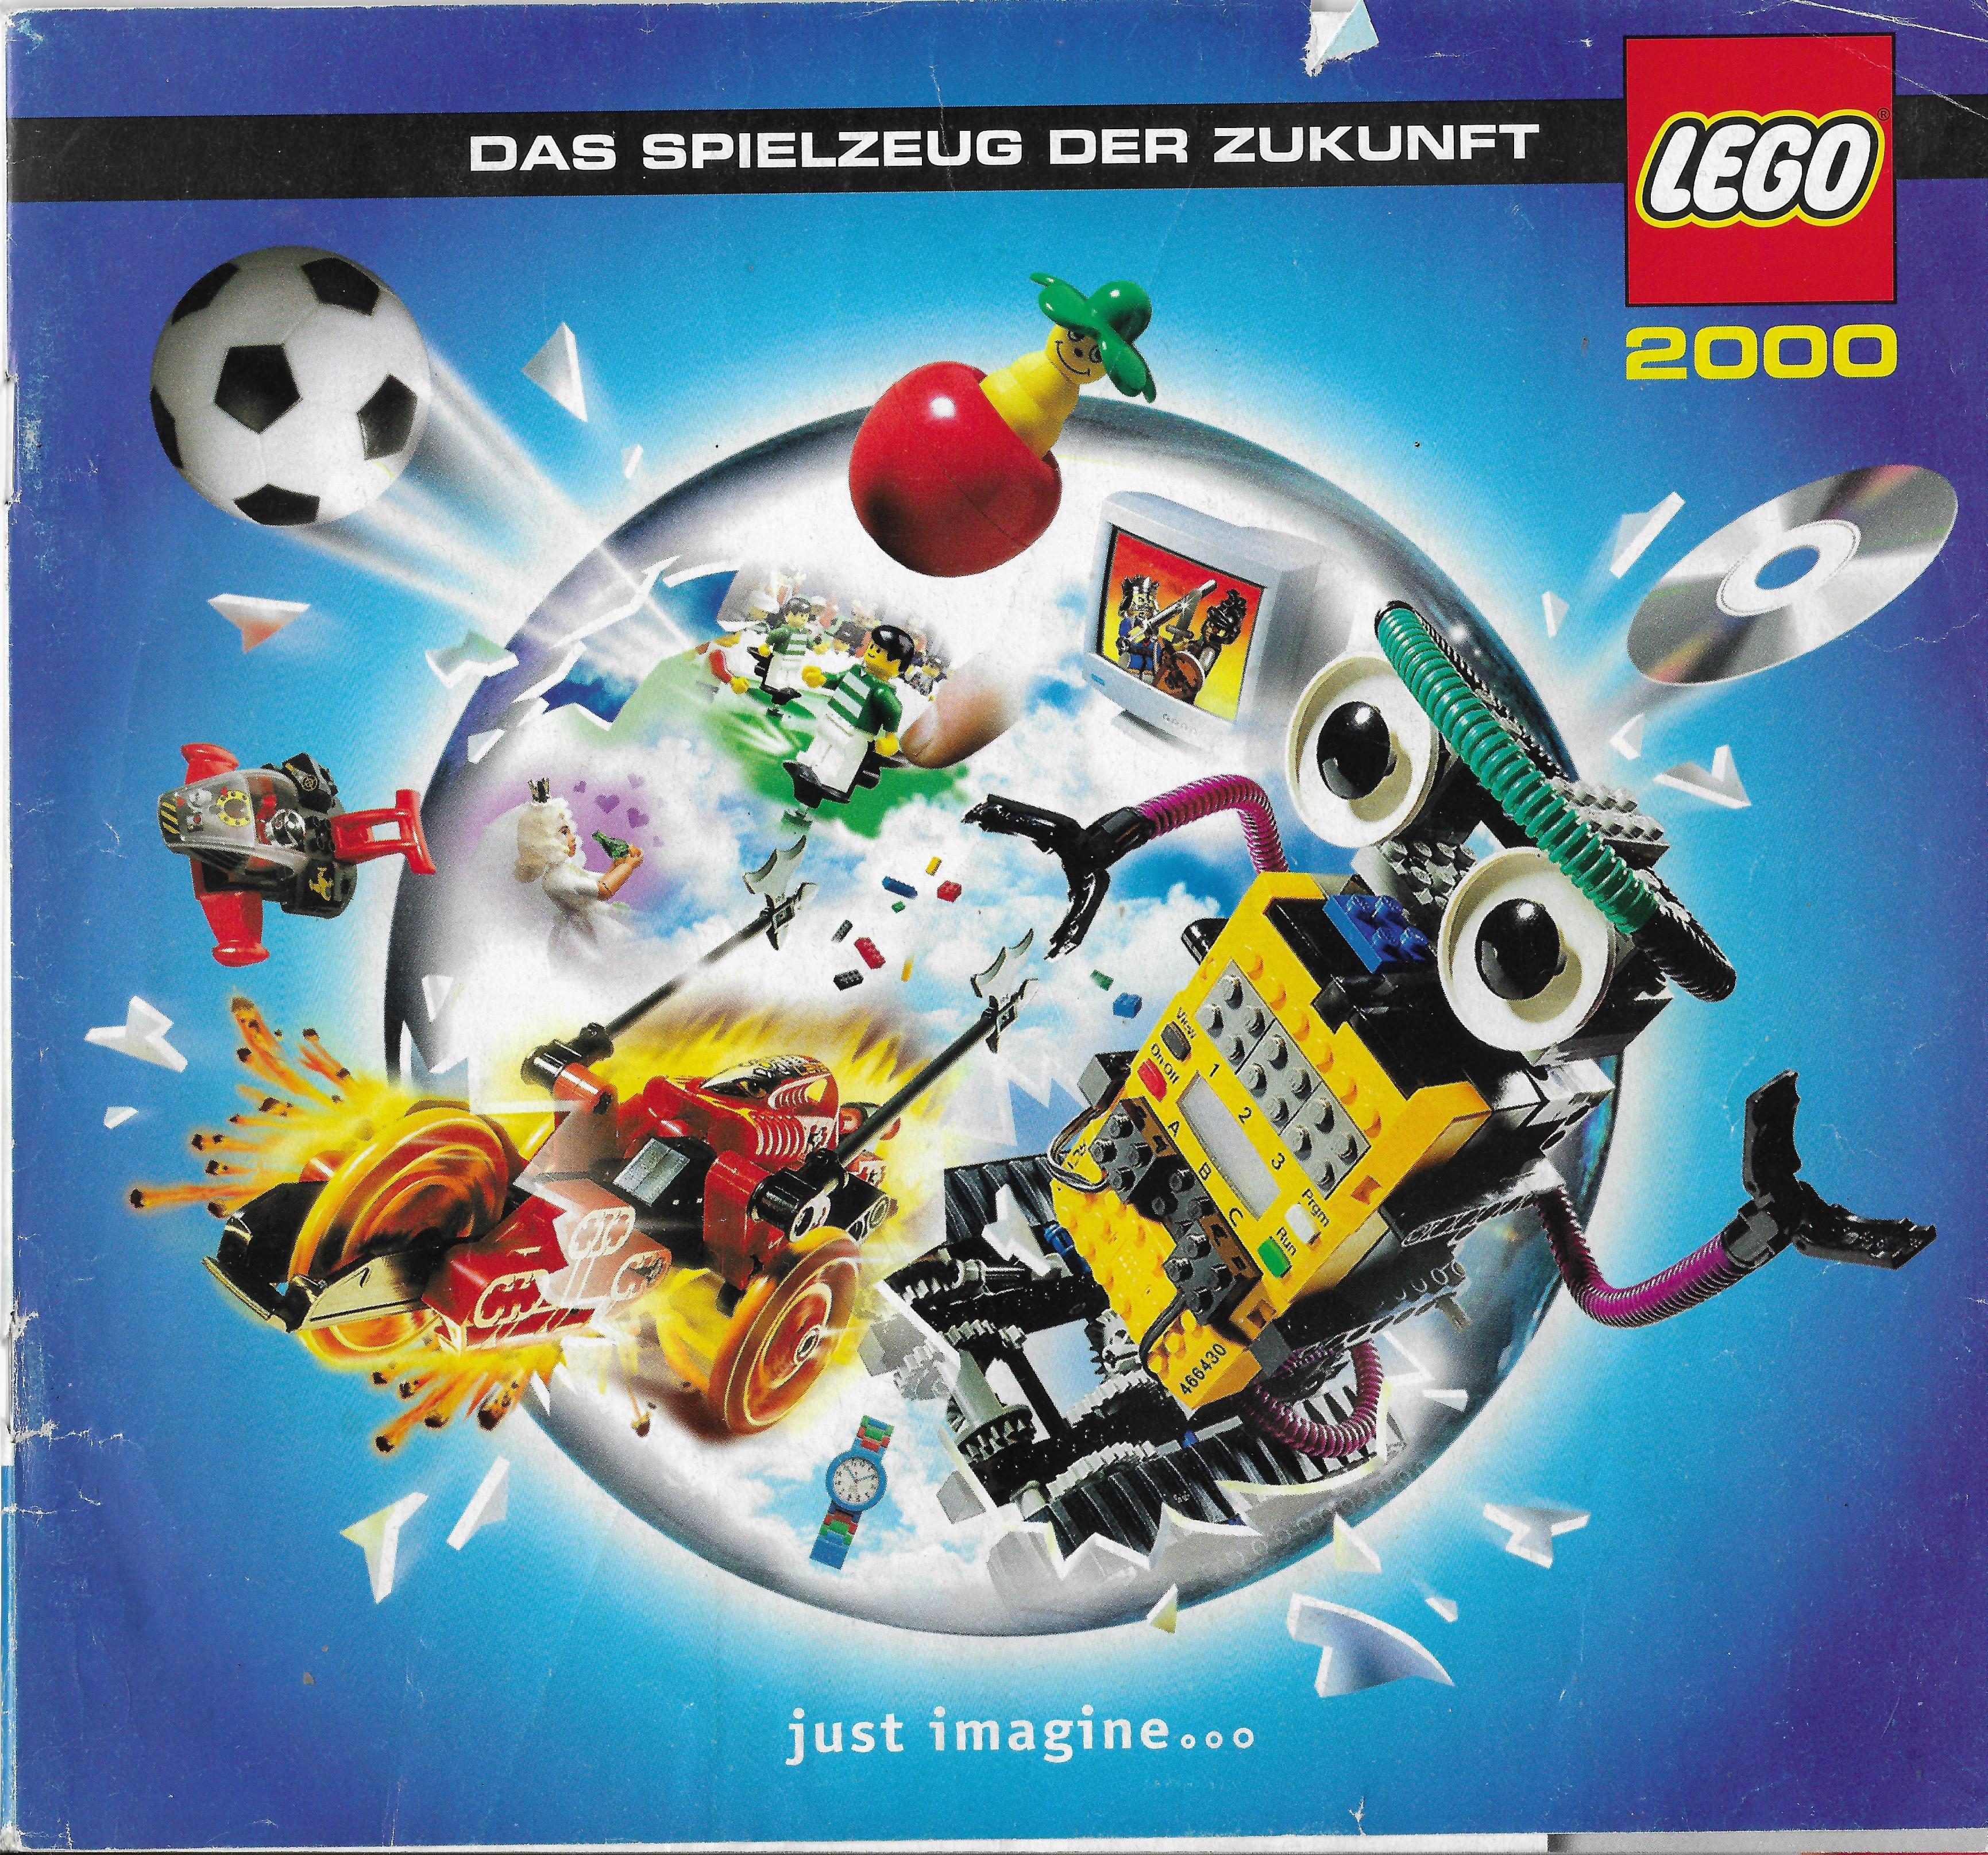 Egy másik német Lego katalógus 2000-ből